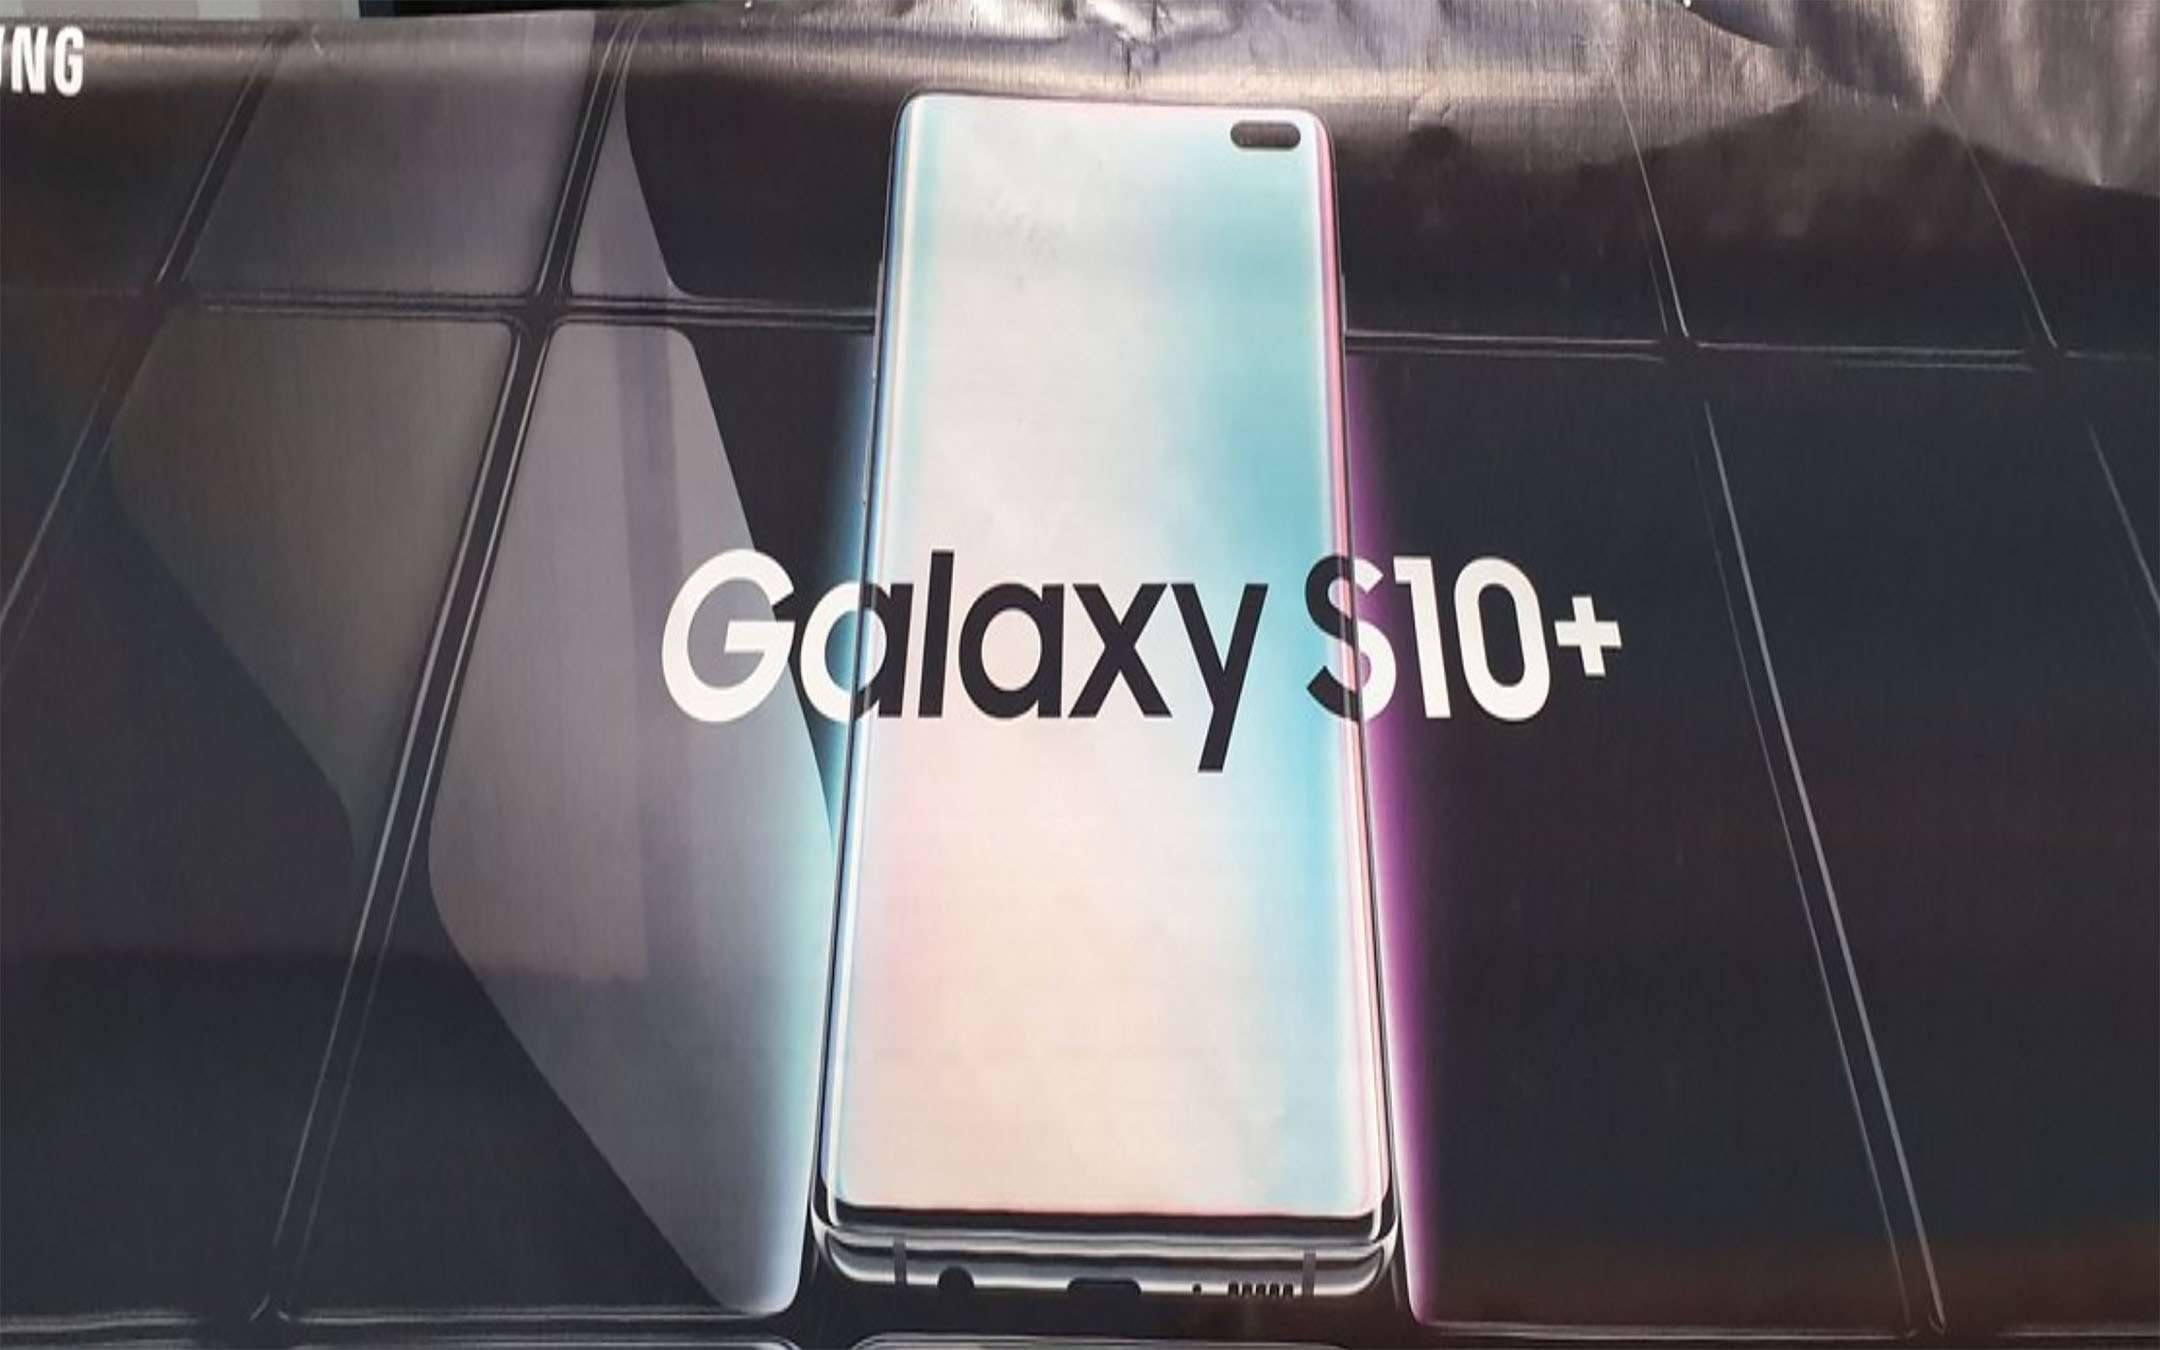 Samsung Galaxy S10+: trapelato banner ufficiale